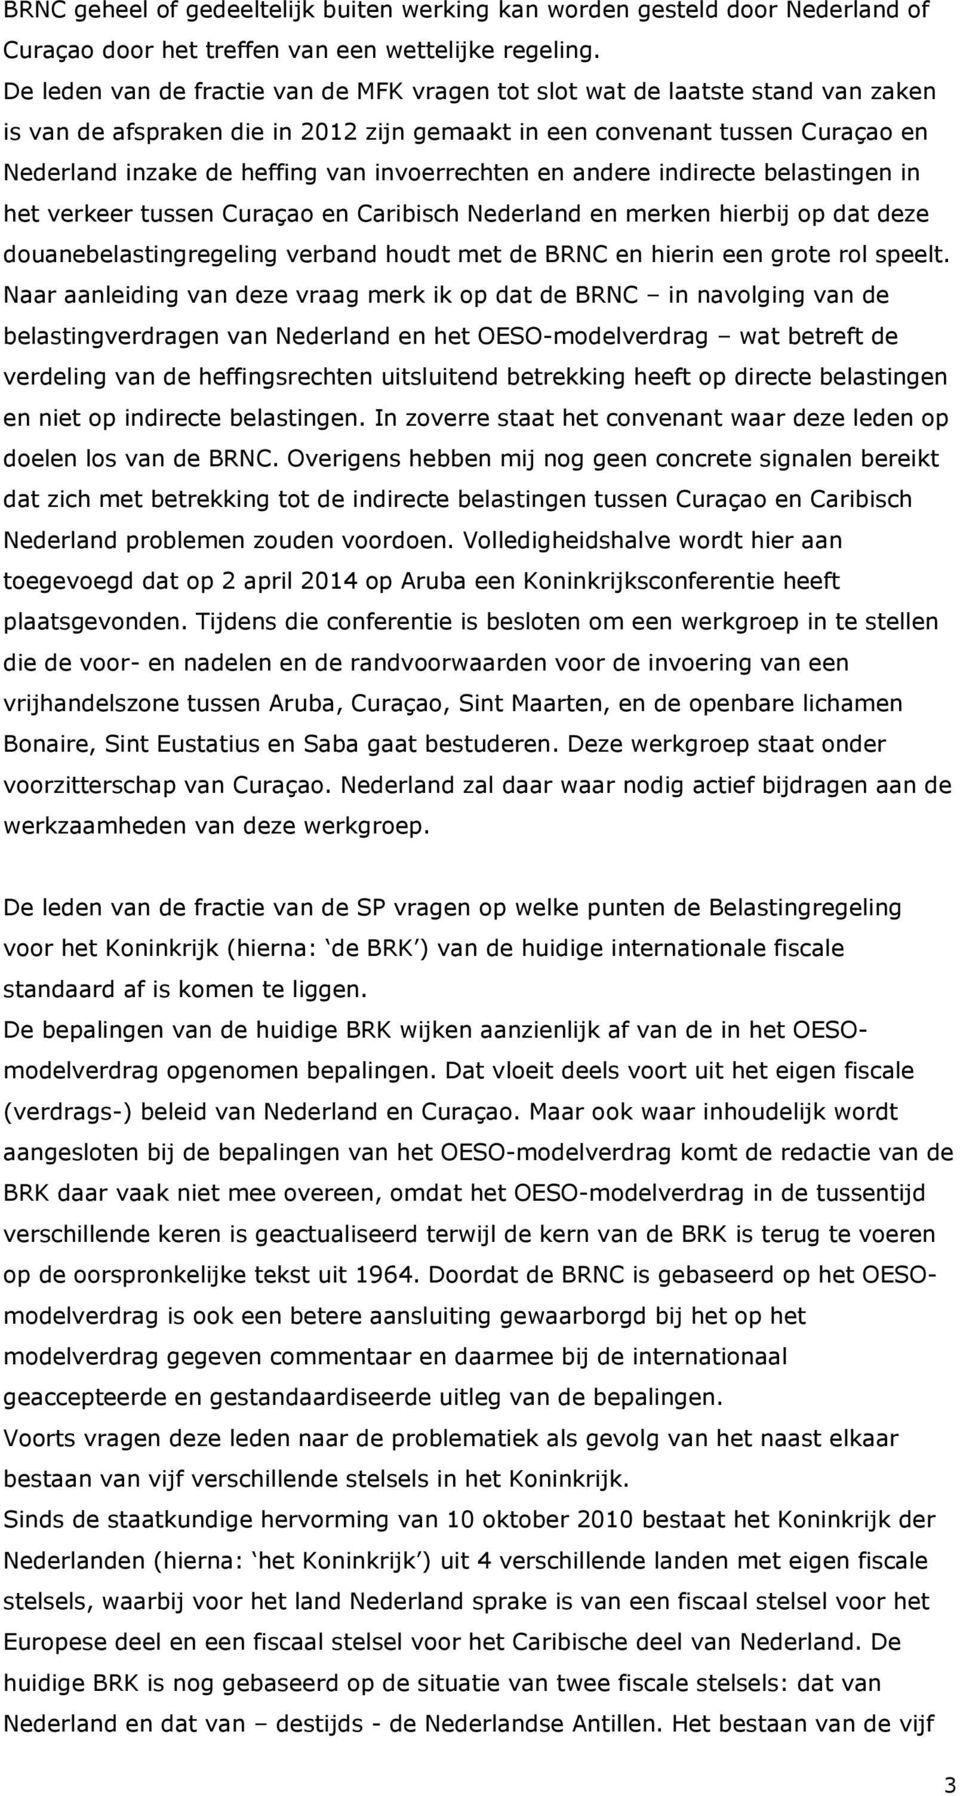 invoerrechten en andere indirecte belastingen in het verkeer tussen Curaçao en Caribisch Nederland en merken hierbij op dat deze douanebelastingregeling verband houdt met de BRNC en hierin een grote